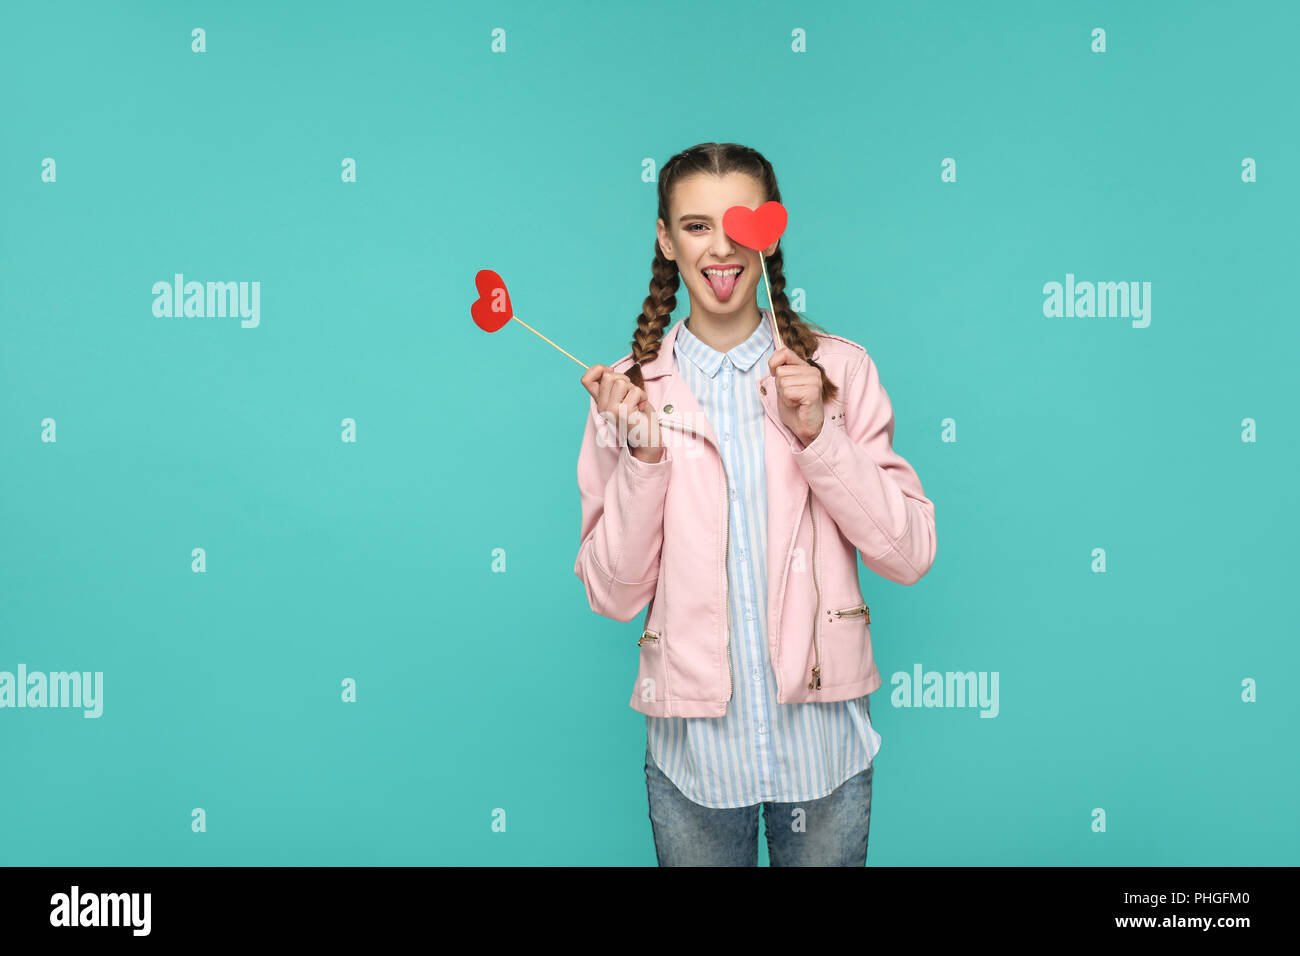 Funny bella ragazza in stile casual, pigtail pettinatura e camicia rosa, permanente e la holding cuore rosso adesivi e guardando la fotocamera con la lingua di fuori Foto Stock